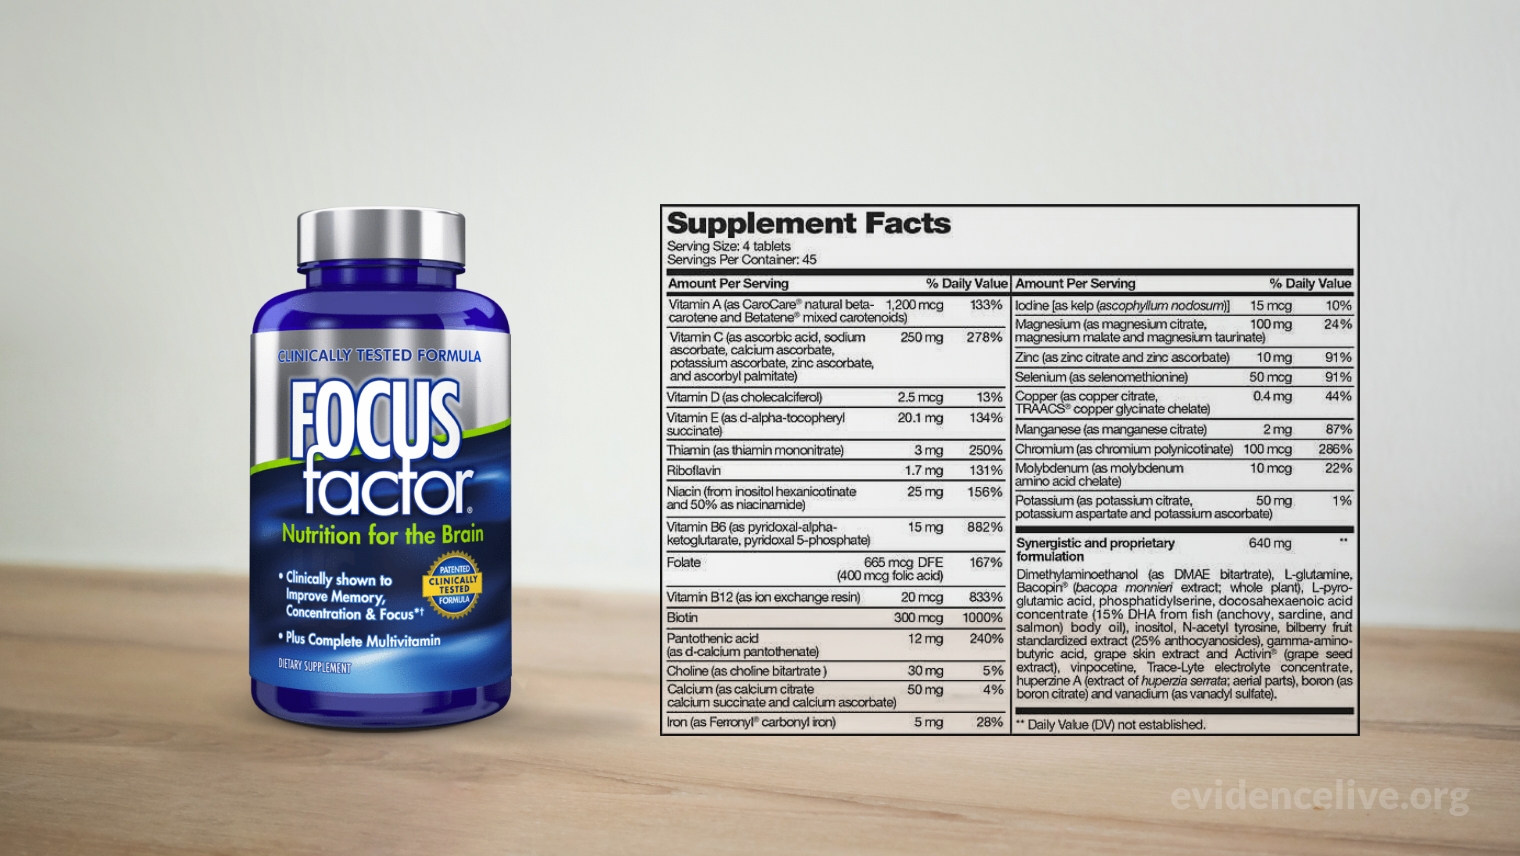 Focus Factor ingredients